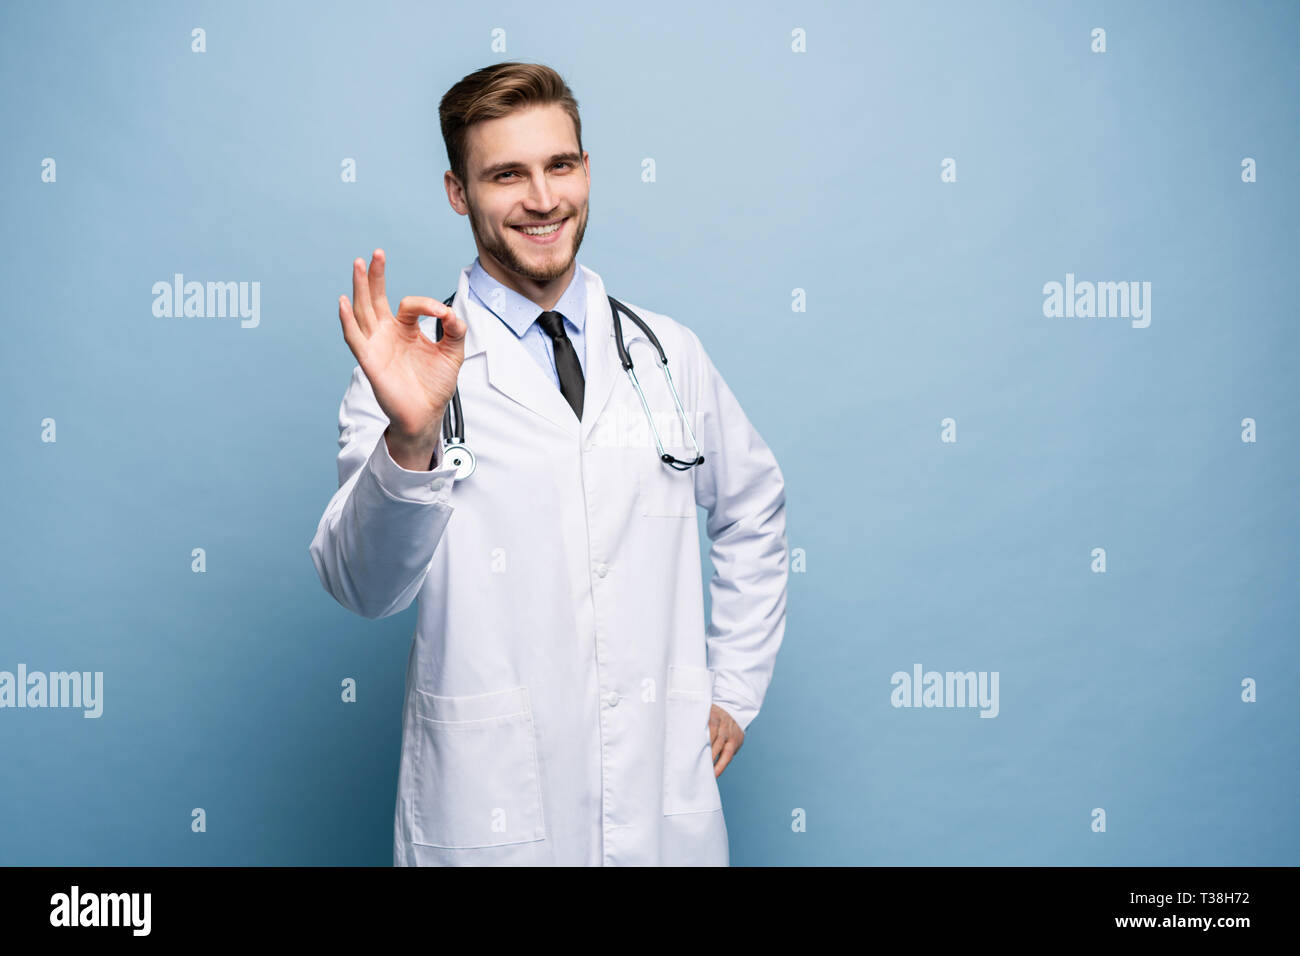 Healthcare, la profesión, el gesto, la gente y la medicina concepto - macho sonriente doctor en bata blanca mostrando ok signo de mano. Foto de stock